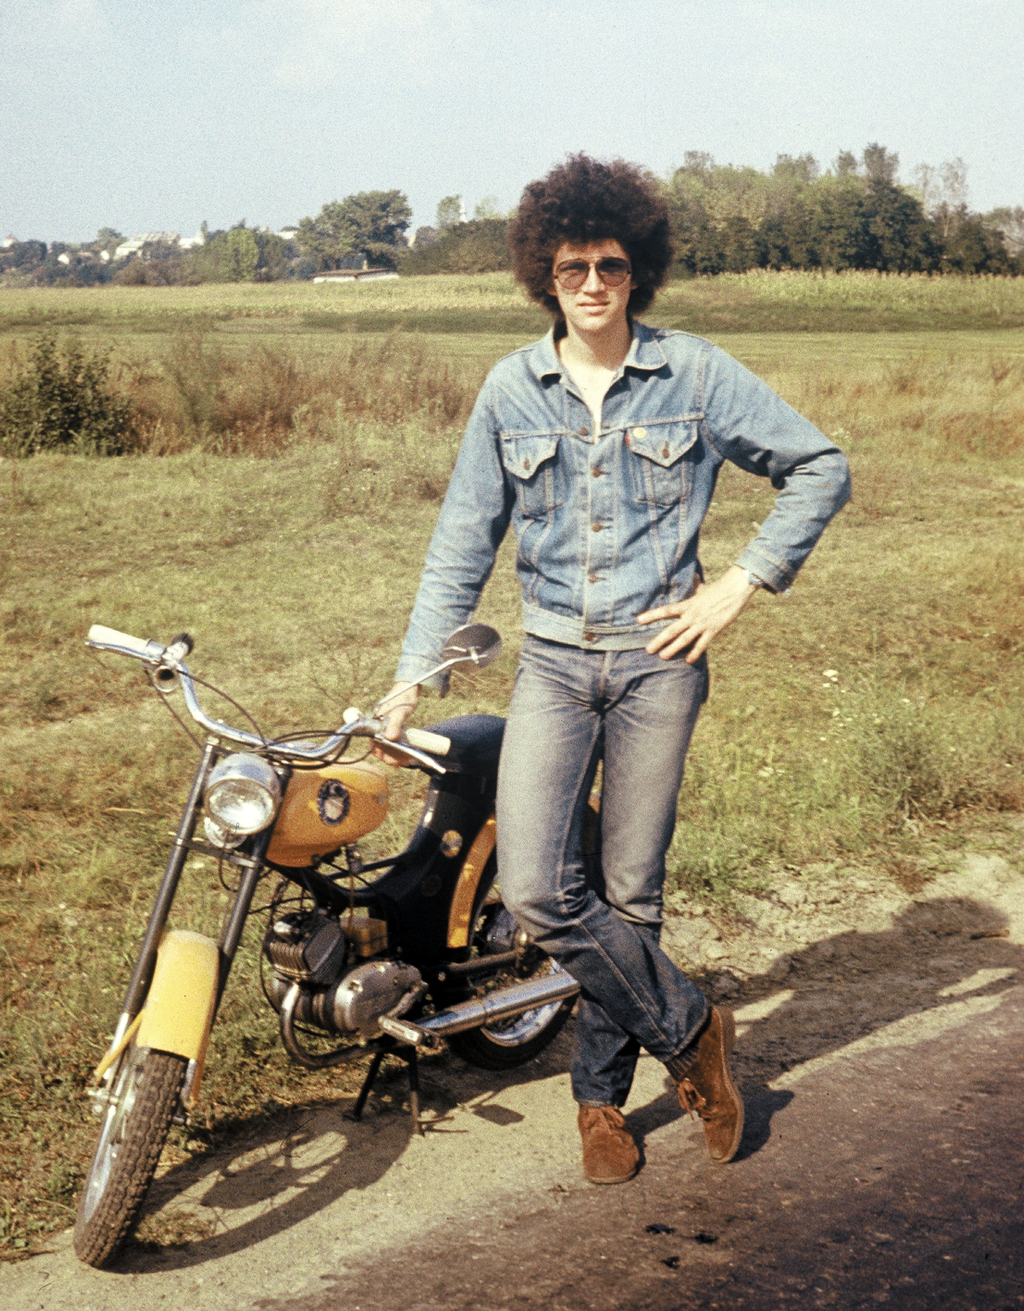 Ruházkodás a szocializmus alatt, színes, motorkerékpár, farmer, robogó, hajviselet, közlekedés, 1976 